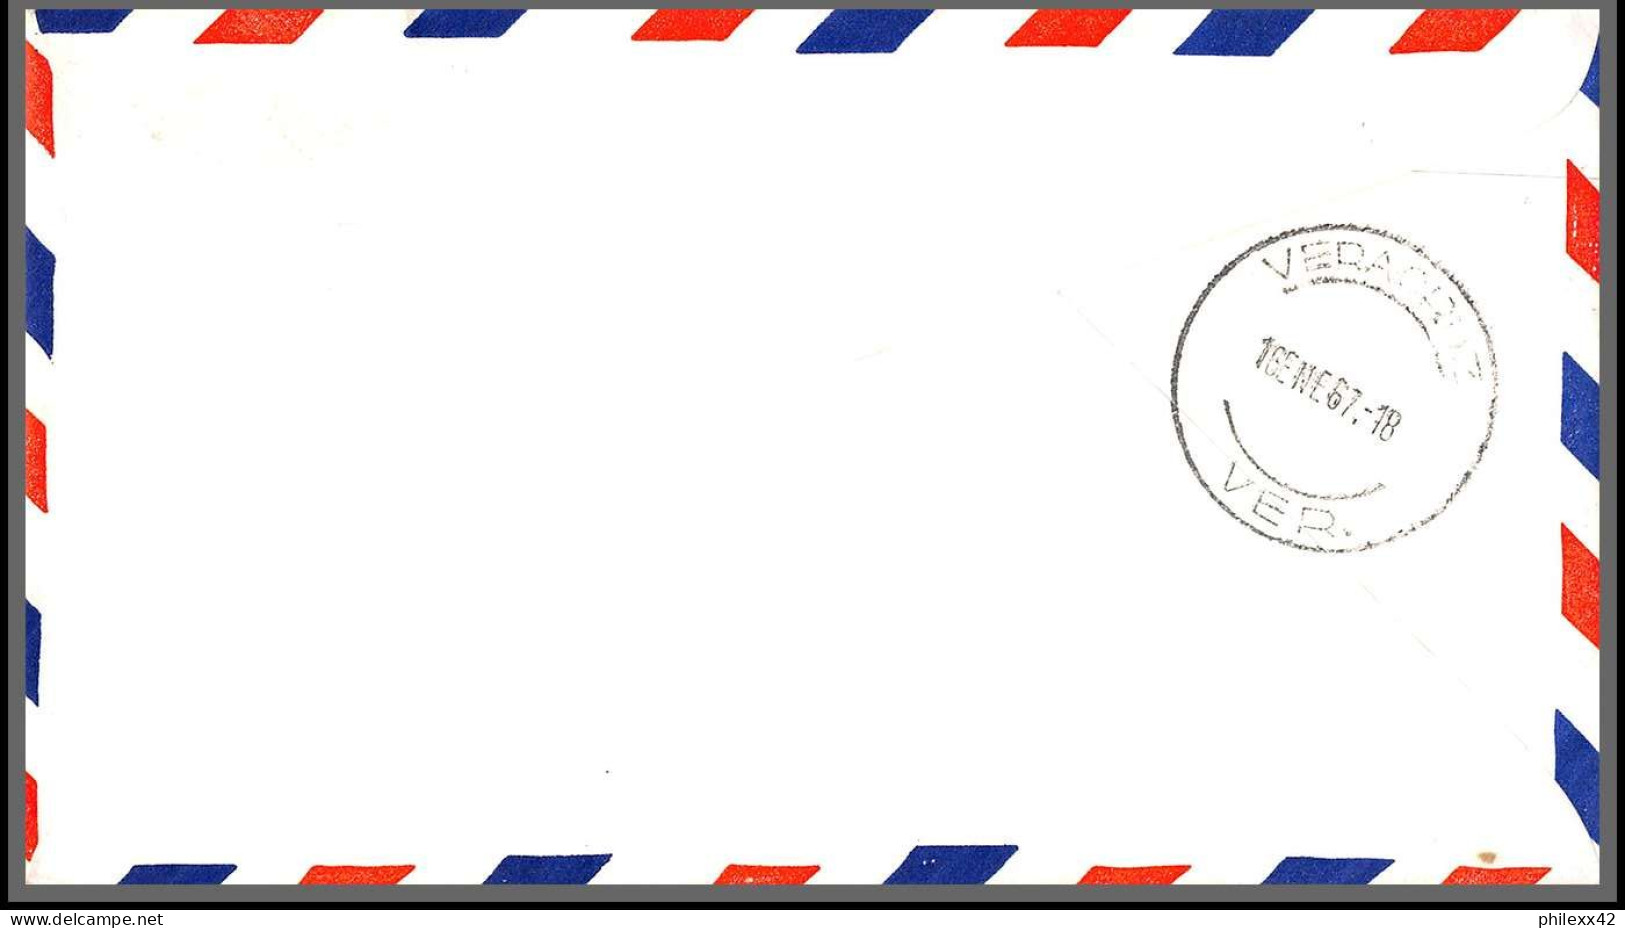 12742 lot de 18 lettres documents premier vol first flight lettre airmail cover usa aviation